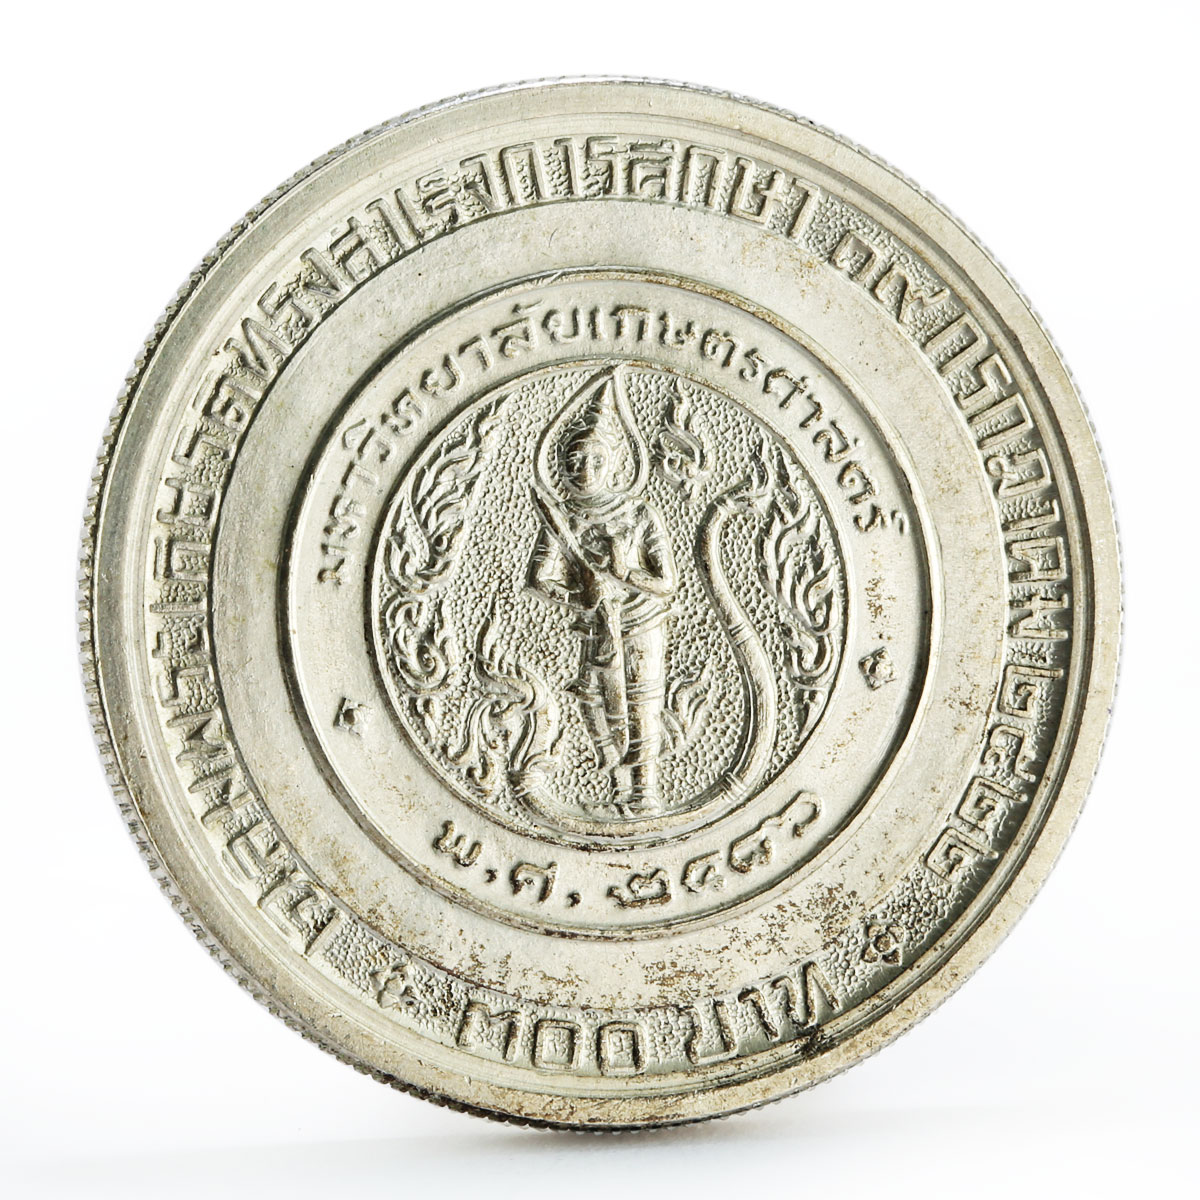 Thailand 300 baht Graduation of Princess Chulabhorn silver coin 1979